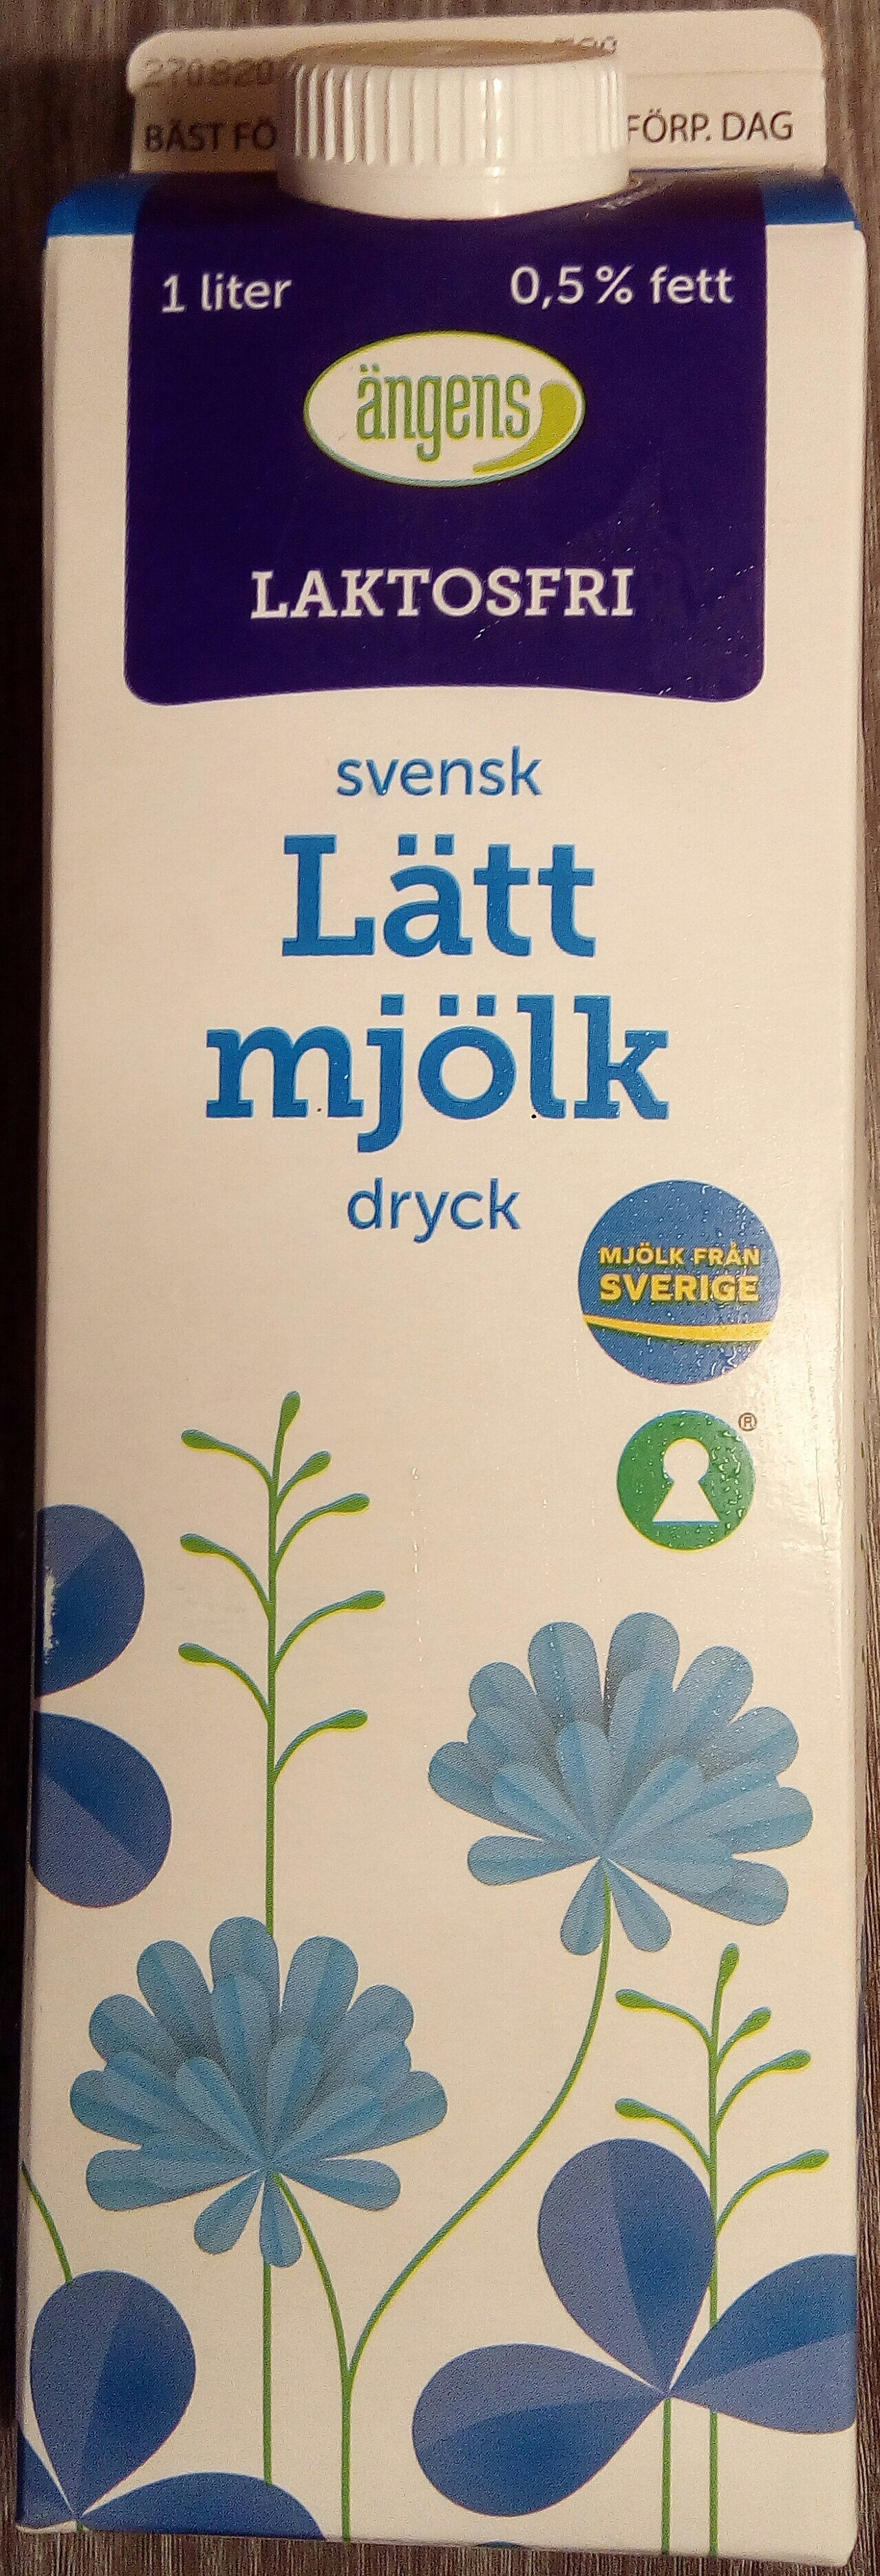 Ängens Laktosfri svensk Lättmjölkdryck - Produkt - sv